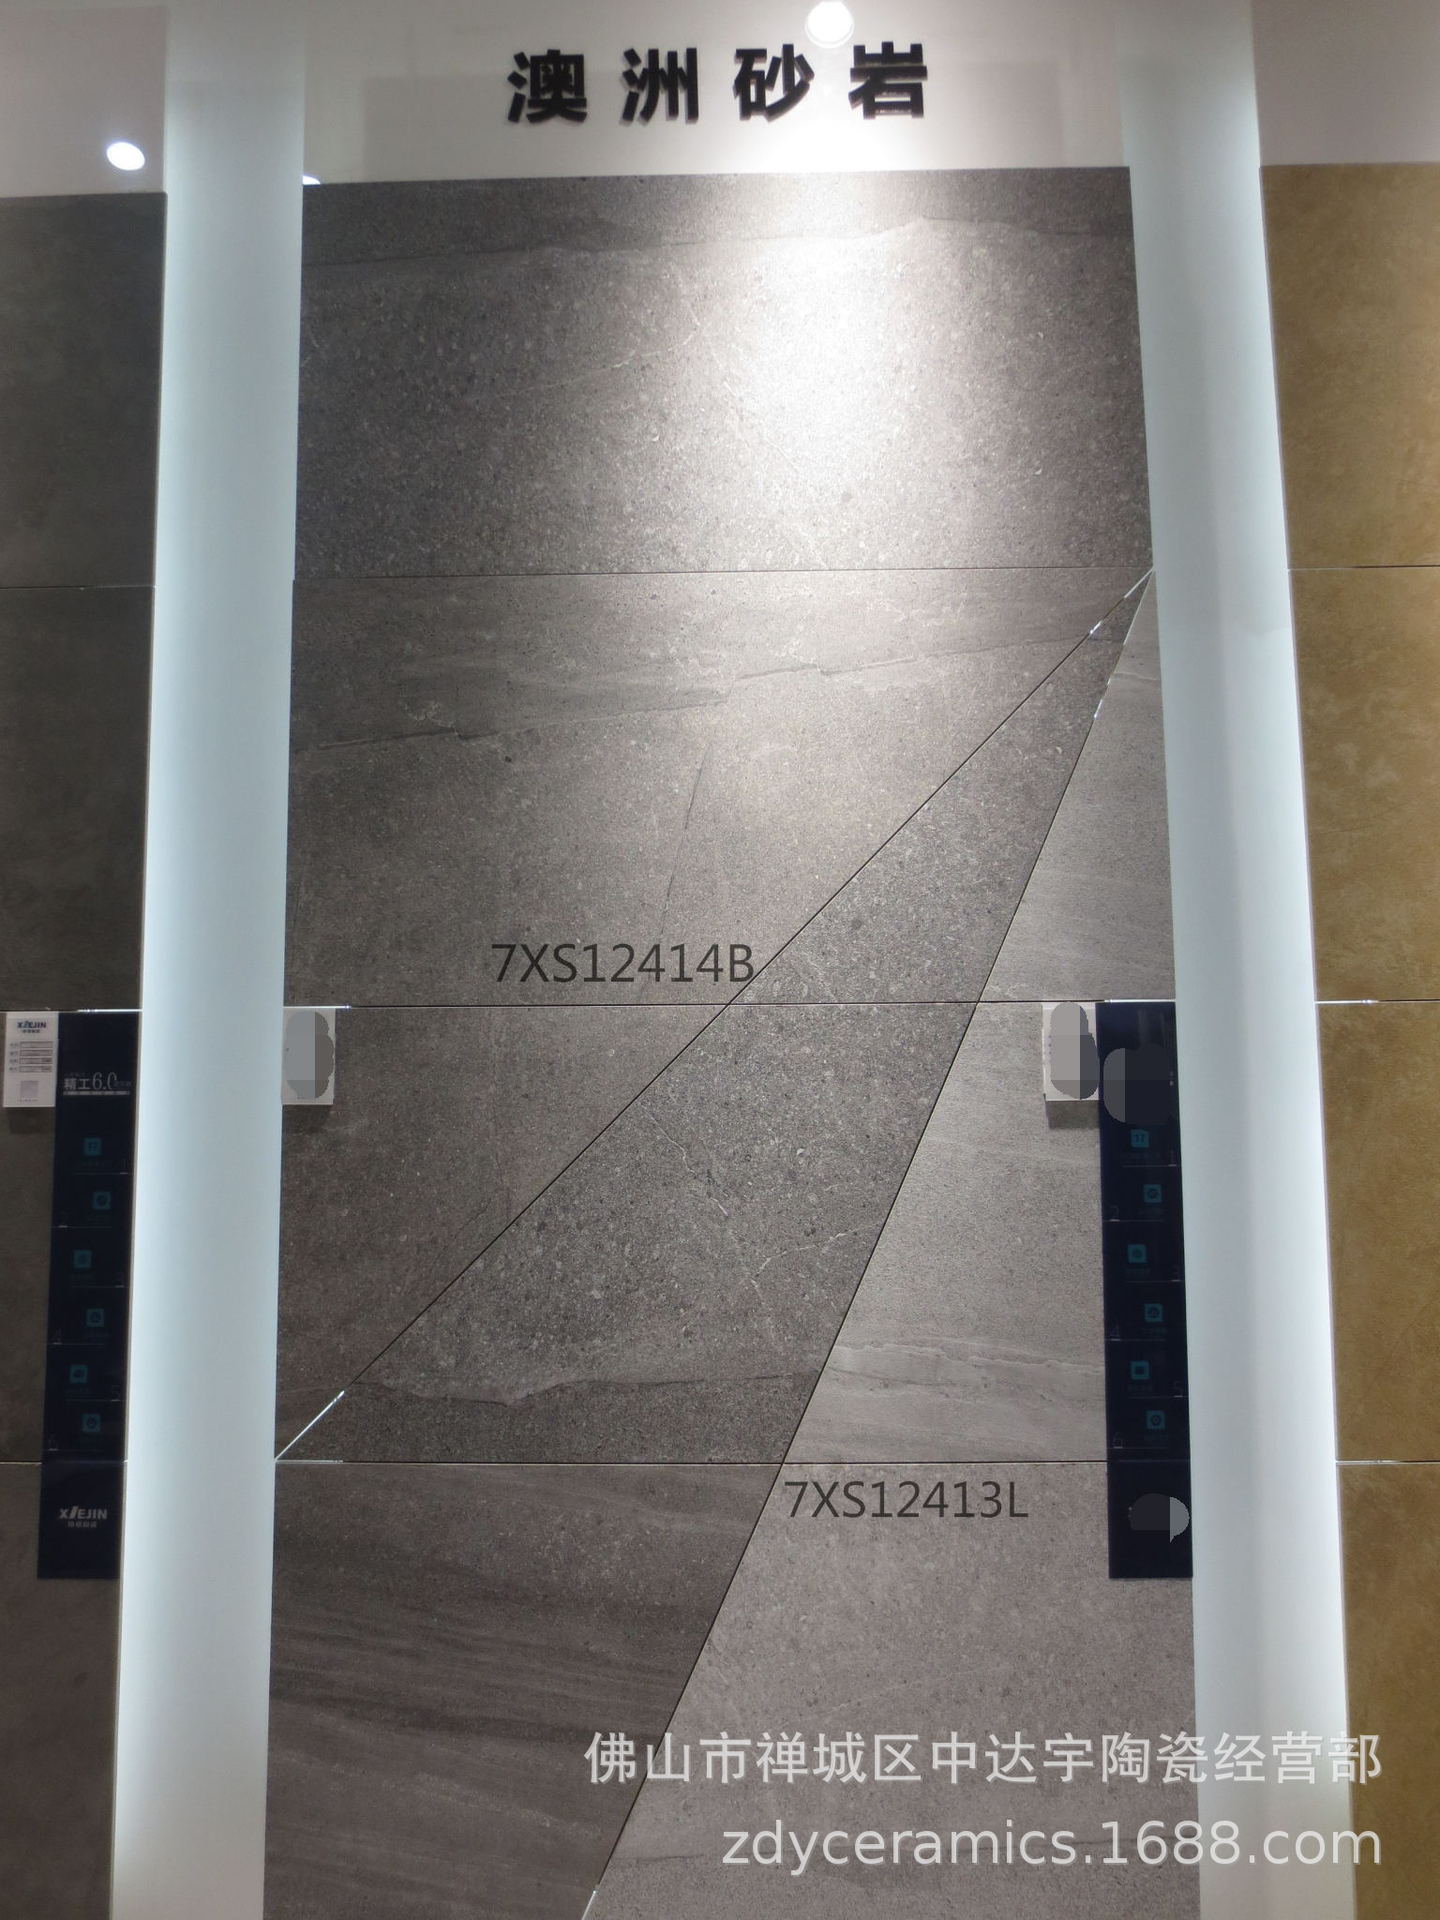 佛山600X1200仿古澳洲砂岩水磨石瓷砖一石多面砖客厅卫生间地面砖示例图17